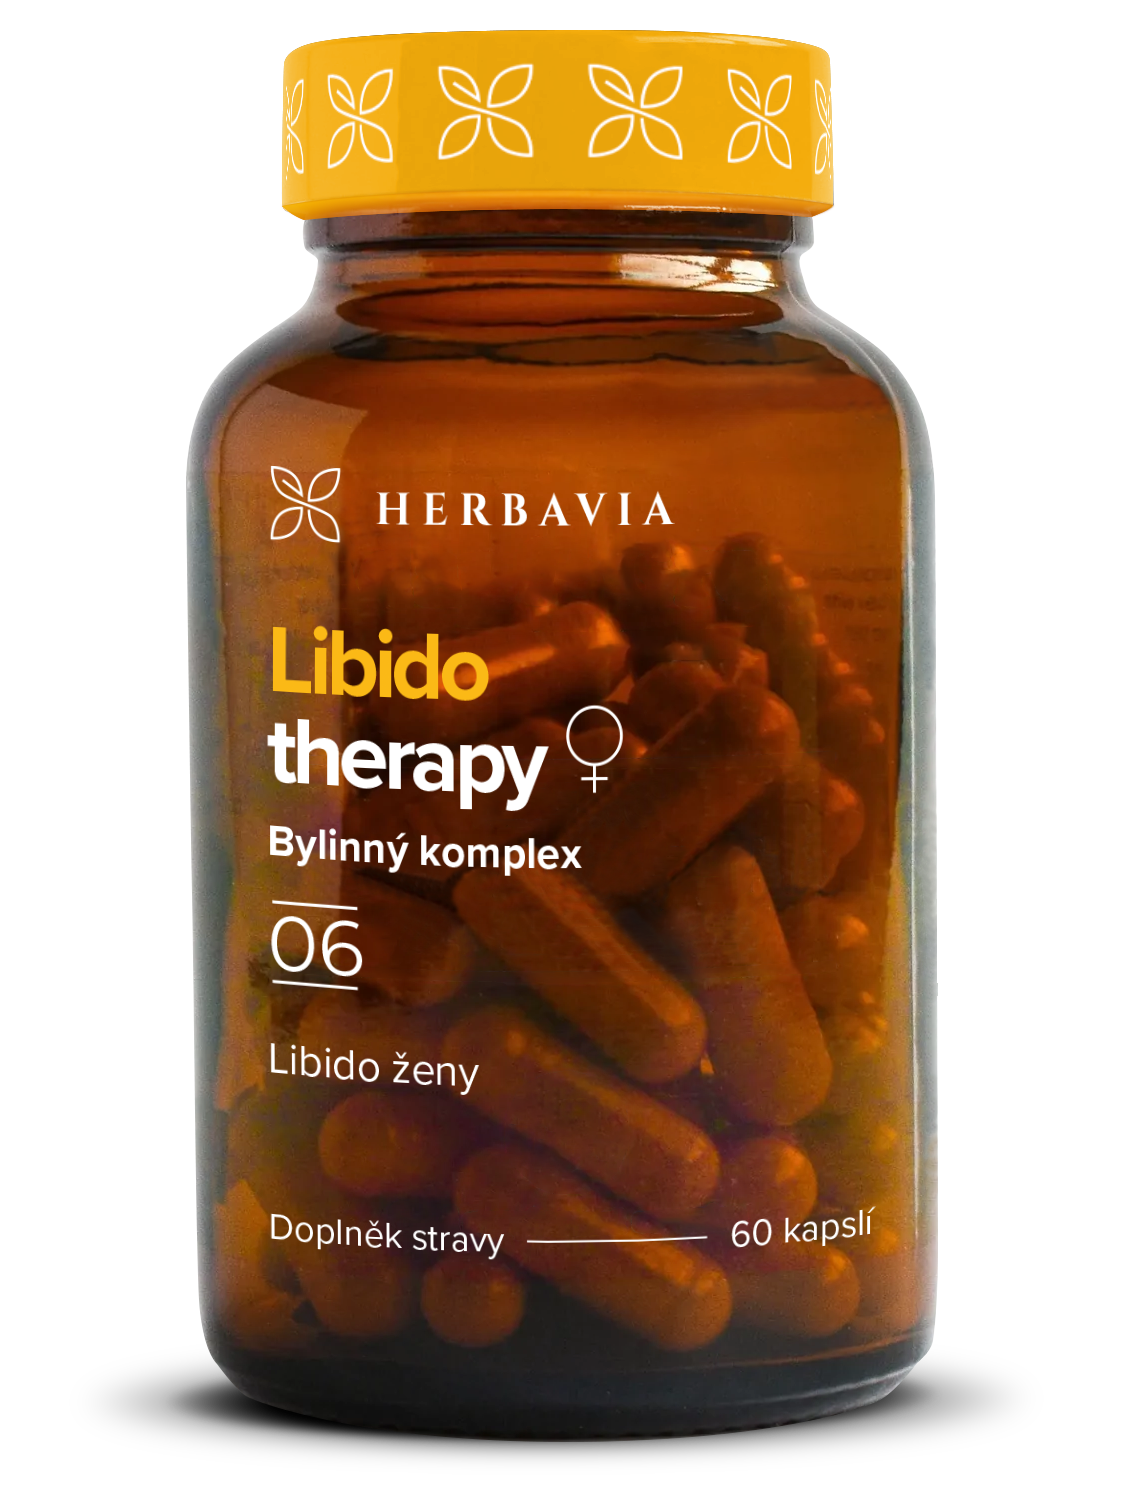 Libido therapy - žena bylinný komplex - 60 kapslí / Herbavia.cz